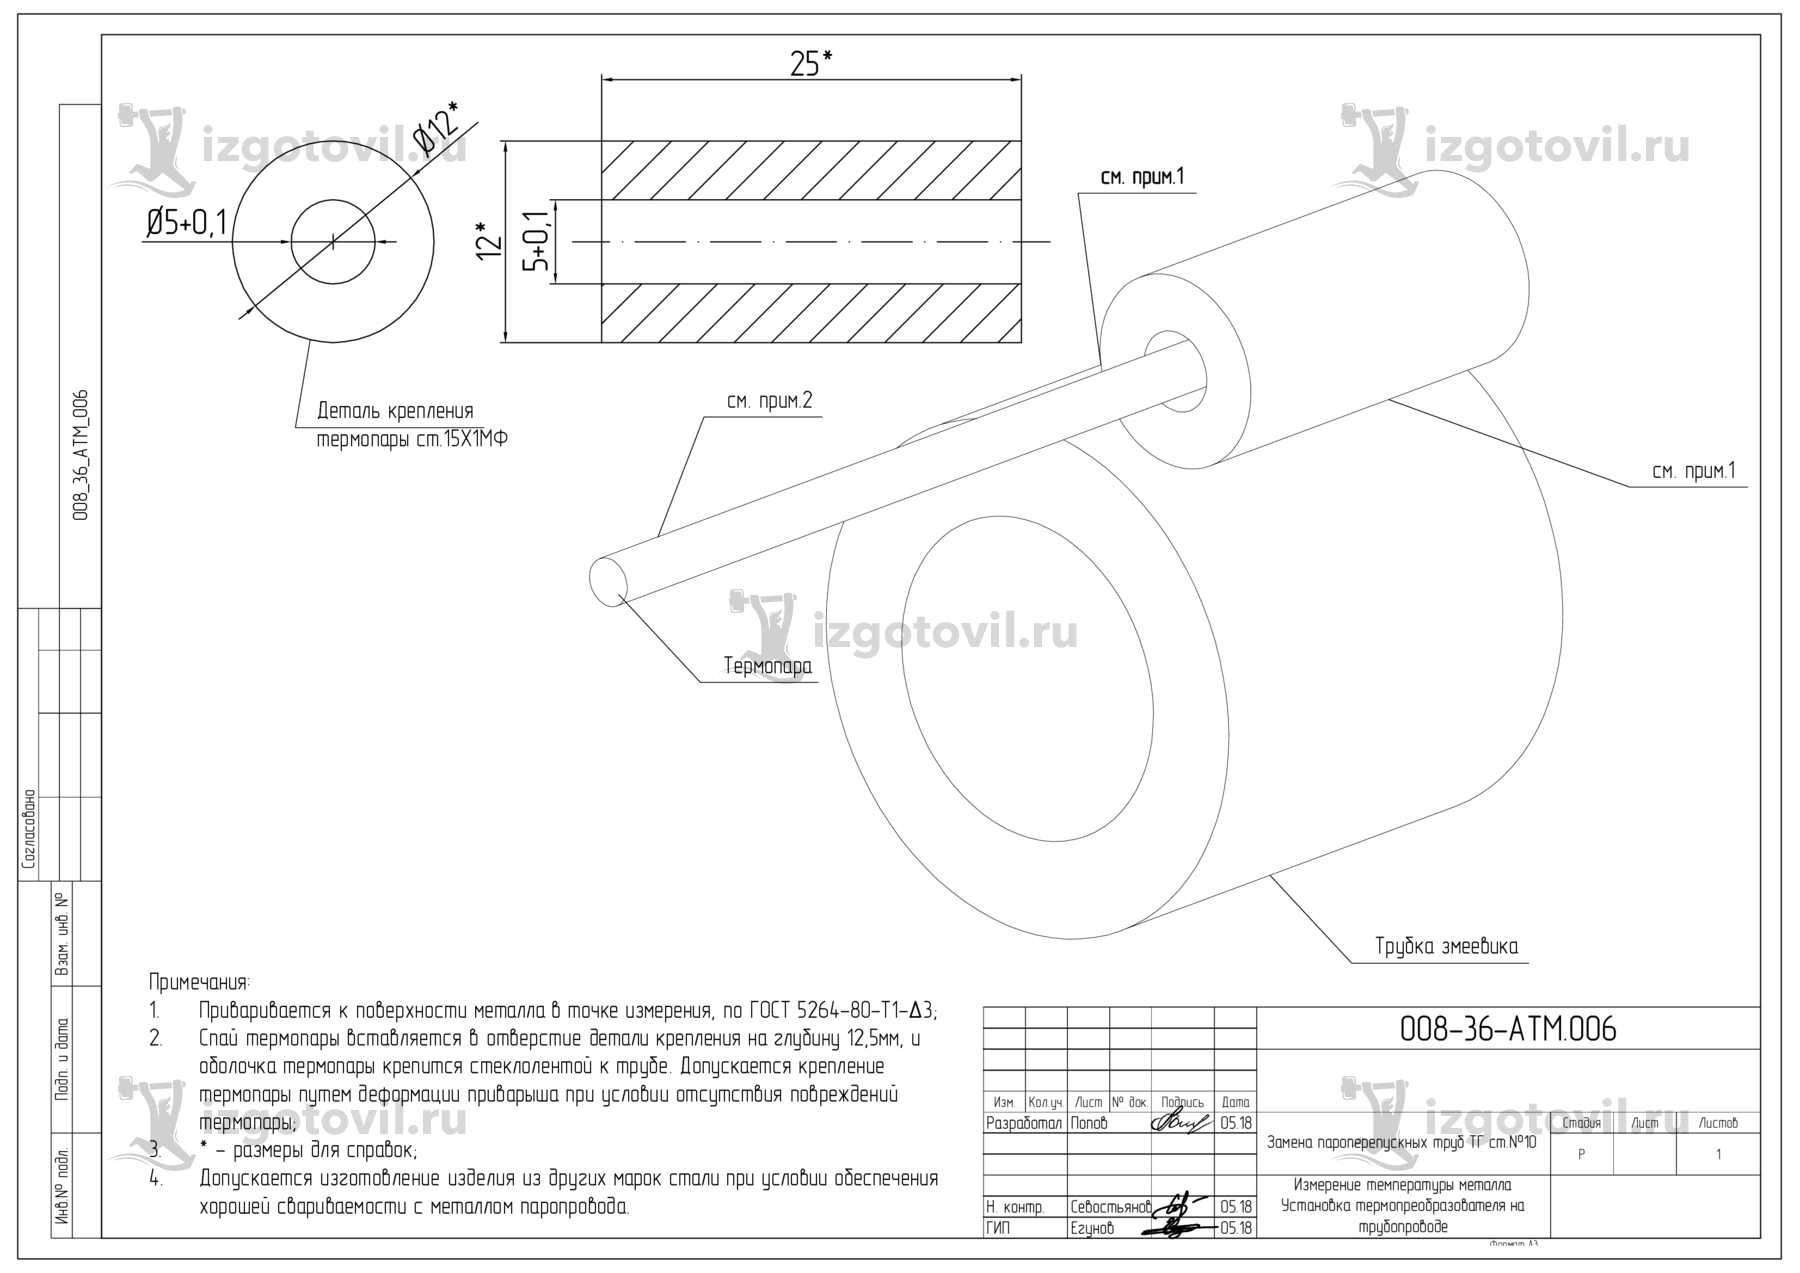 Изготовление технологических деталей (Деталь крепления термопары ст.12Х1МФ)